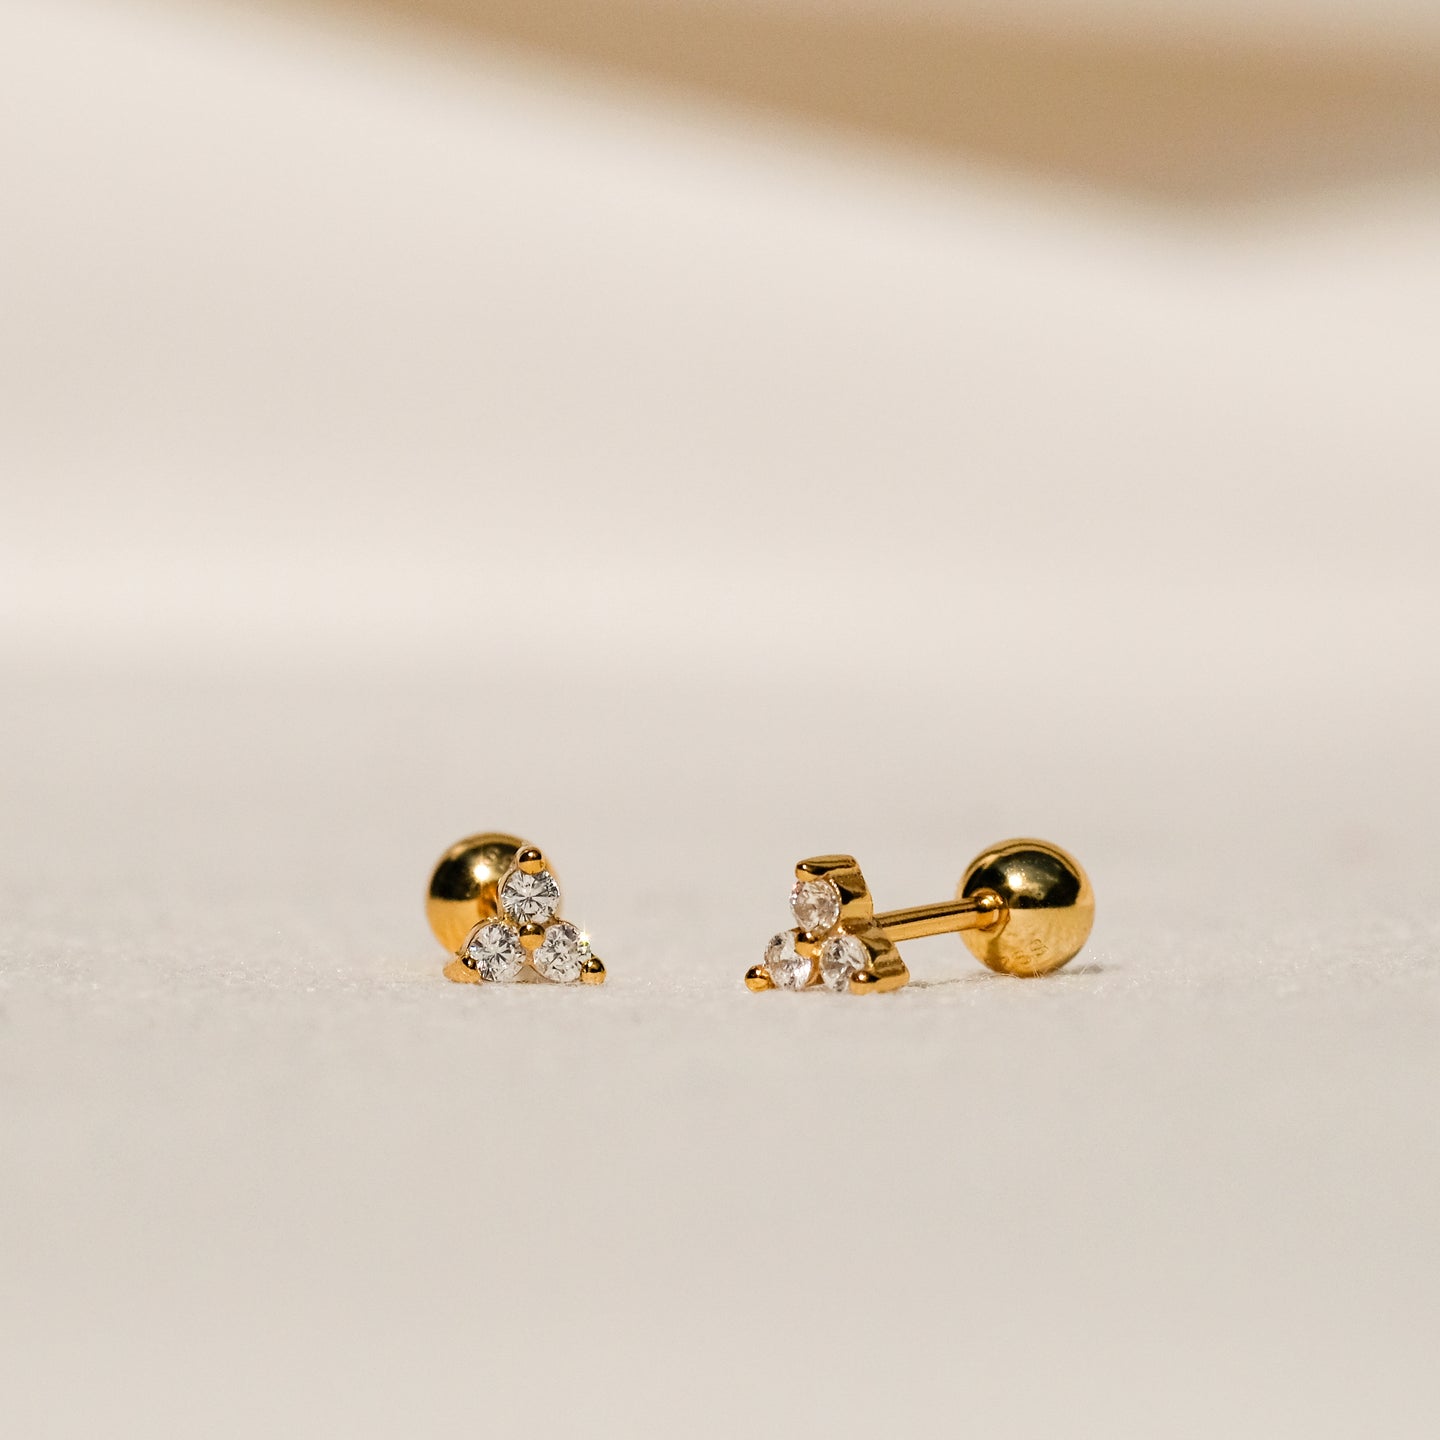 products/nena-cz-stud-earrings-18k-gold-vermeil-1.jpg